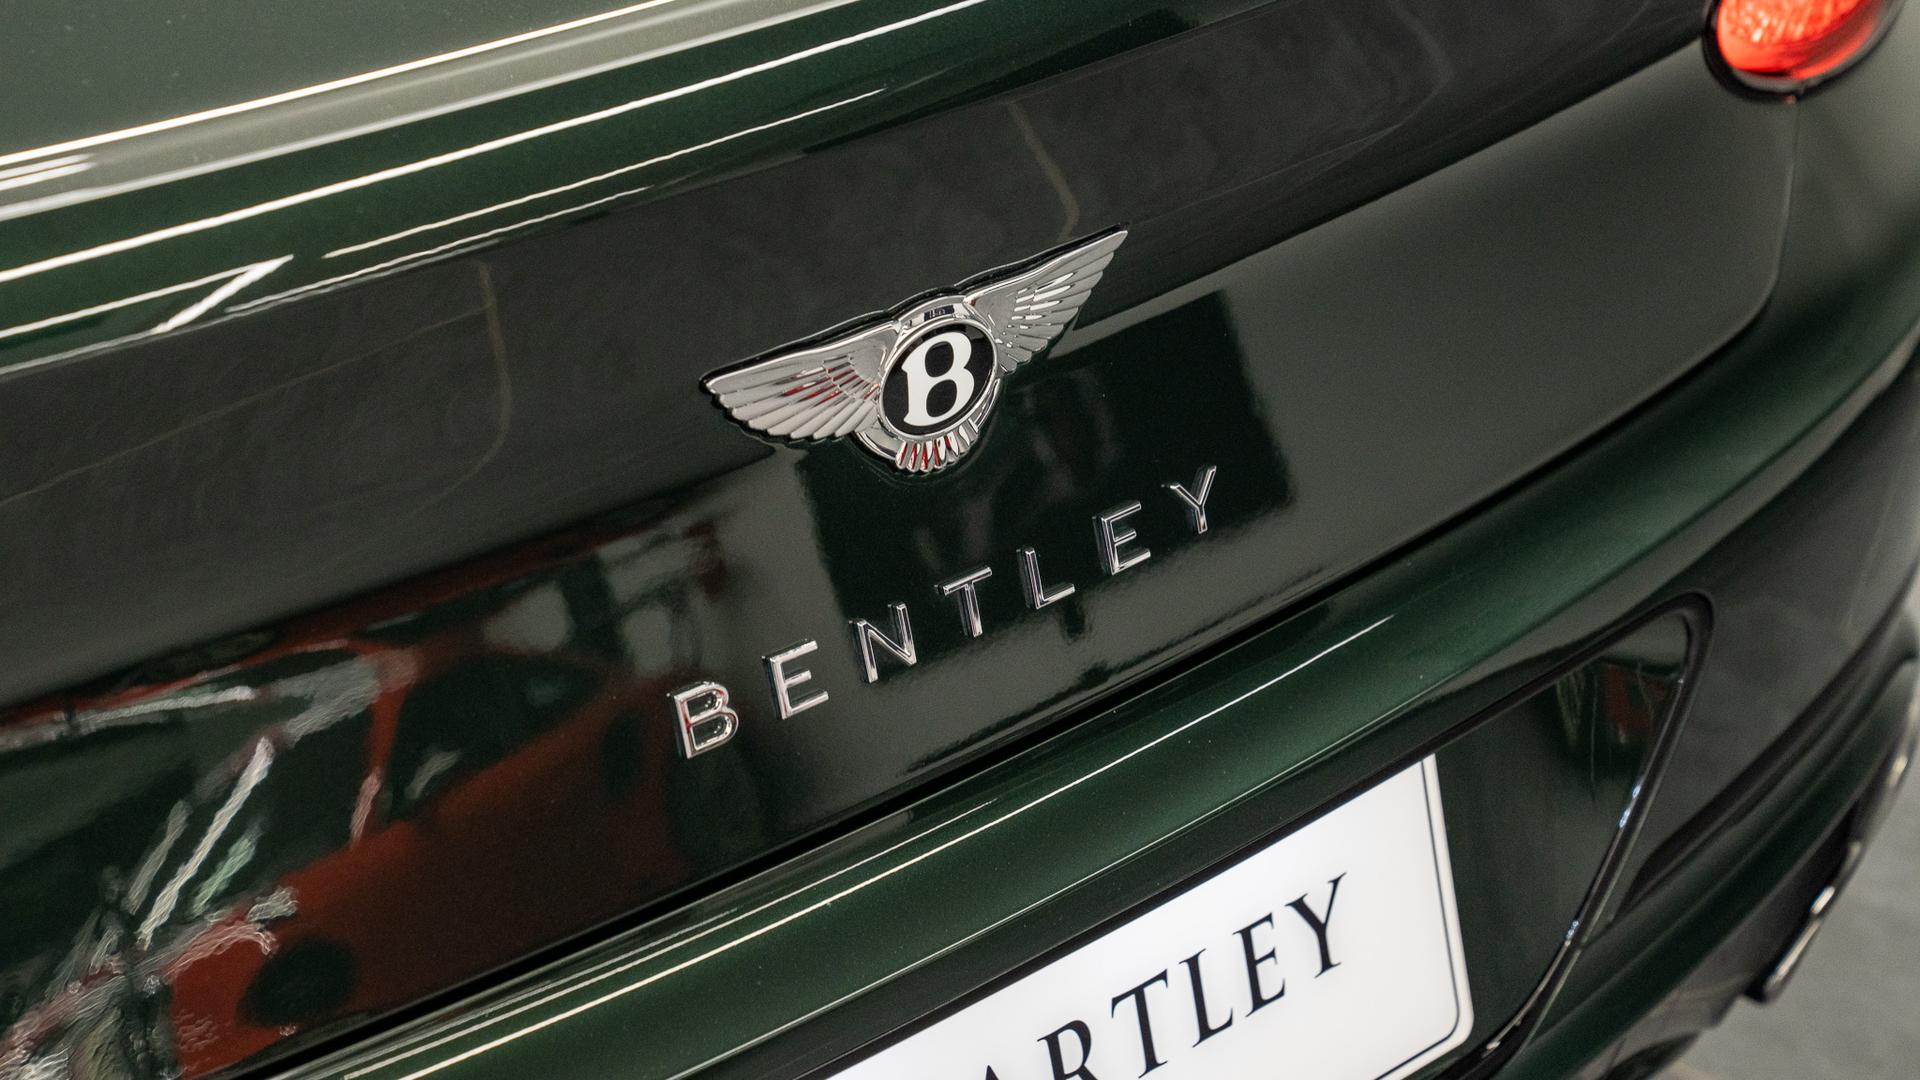 Bentley Continental GTC Photo a93fb843-d5a0-43d9-b981-2cd5a6ca7430.jpg